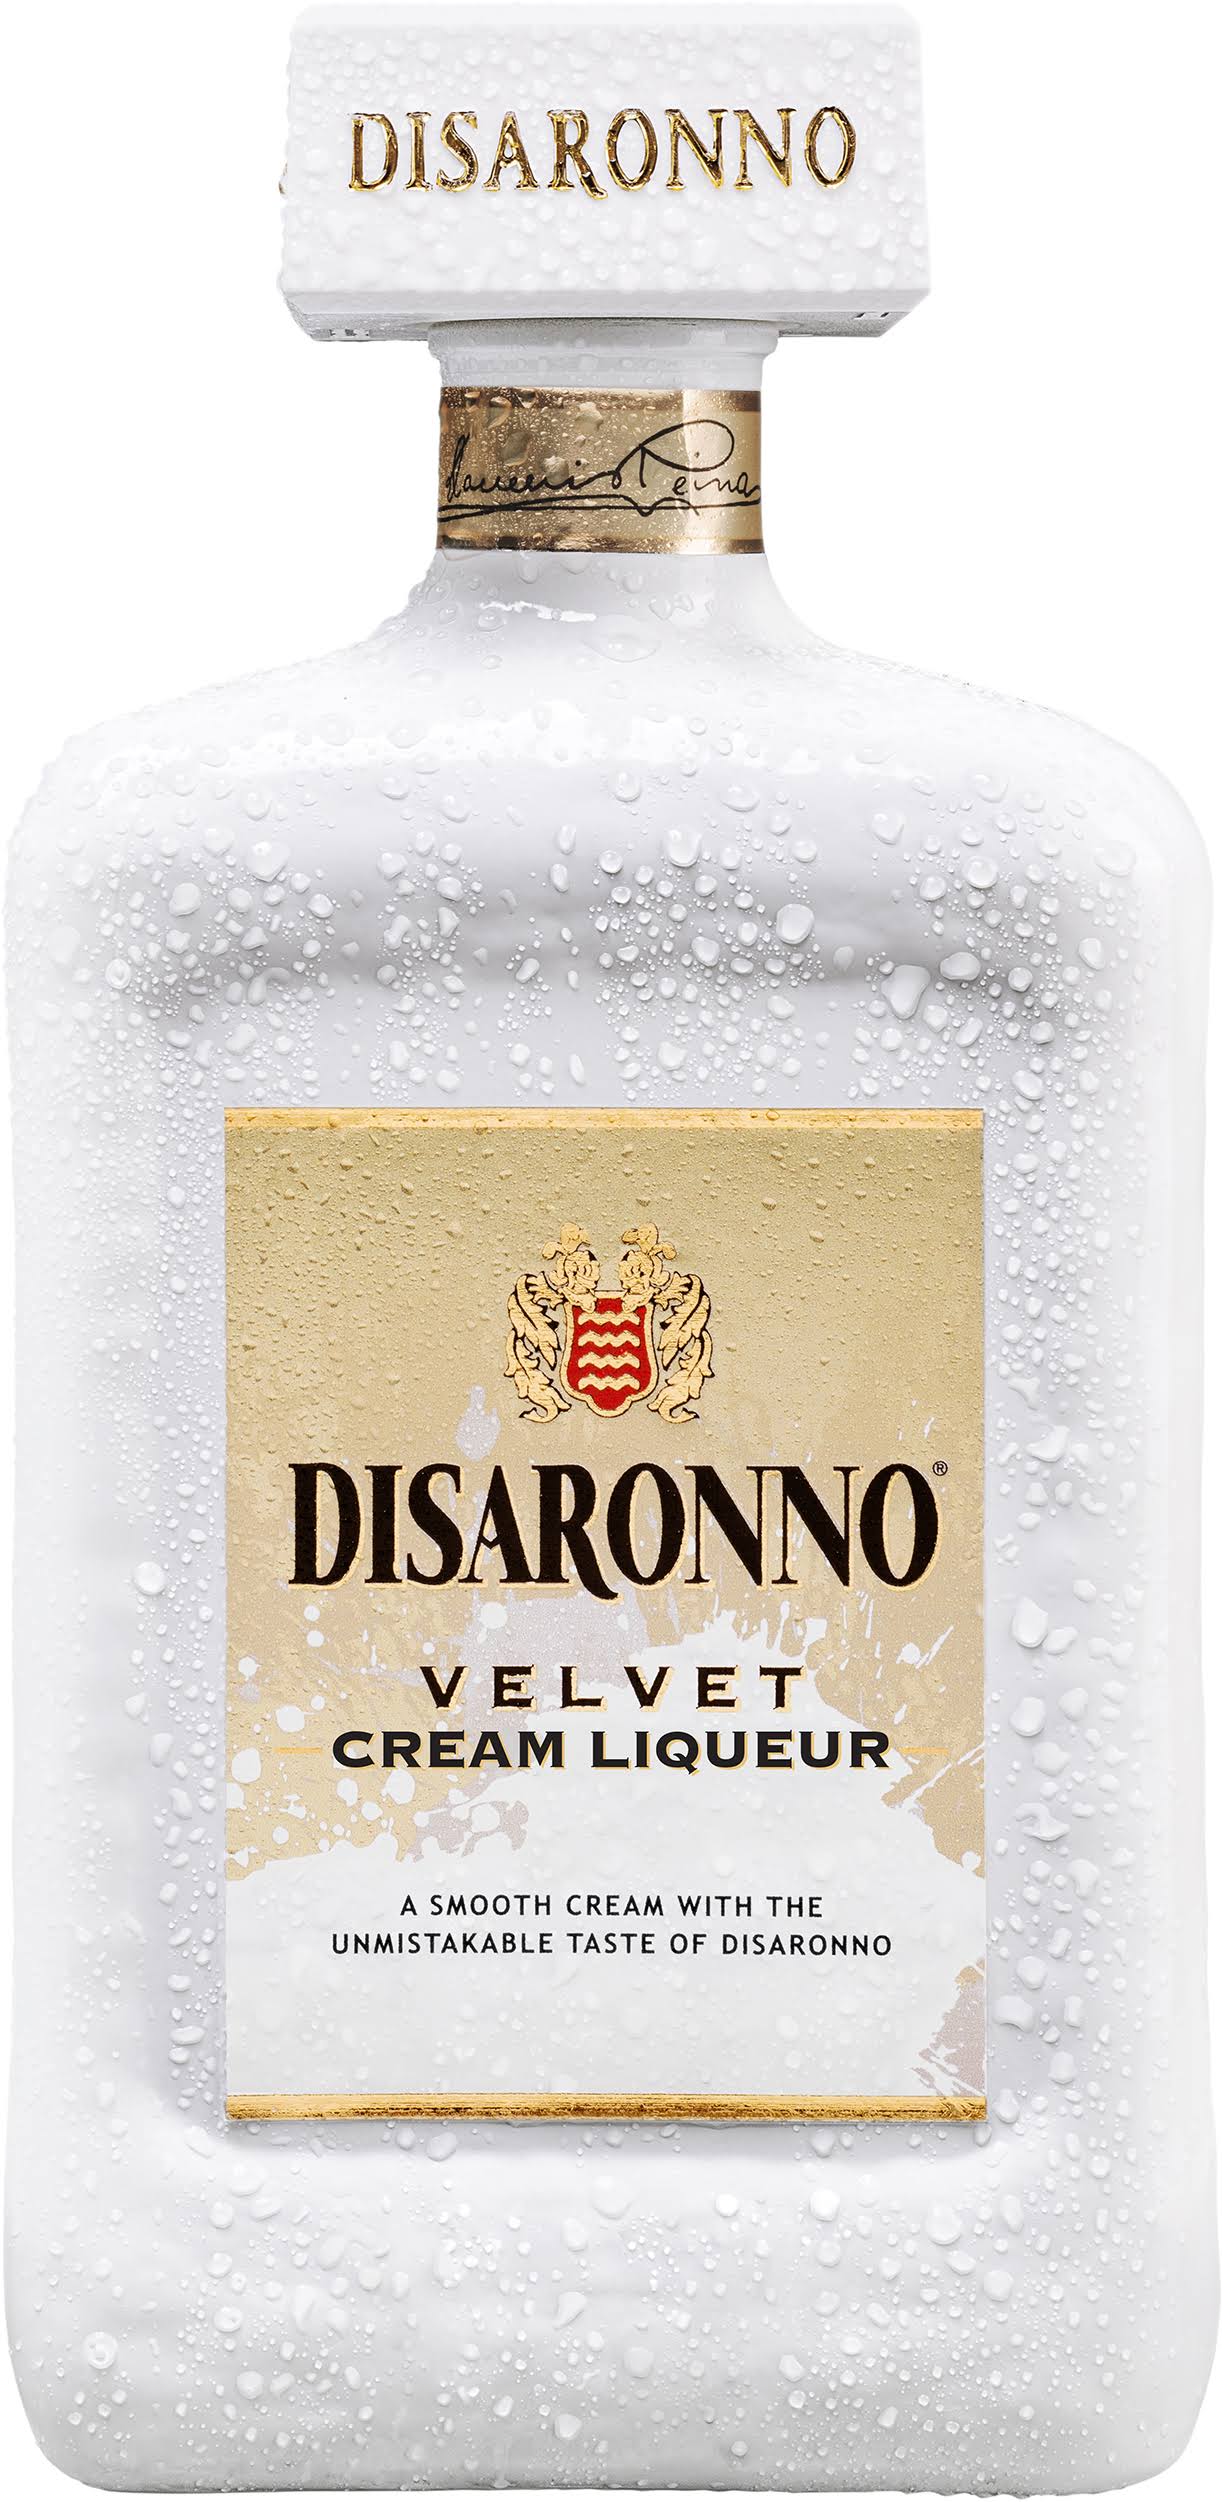 Disaronno Cream Liqueur, Velvet - 750 ml